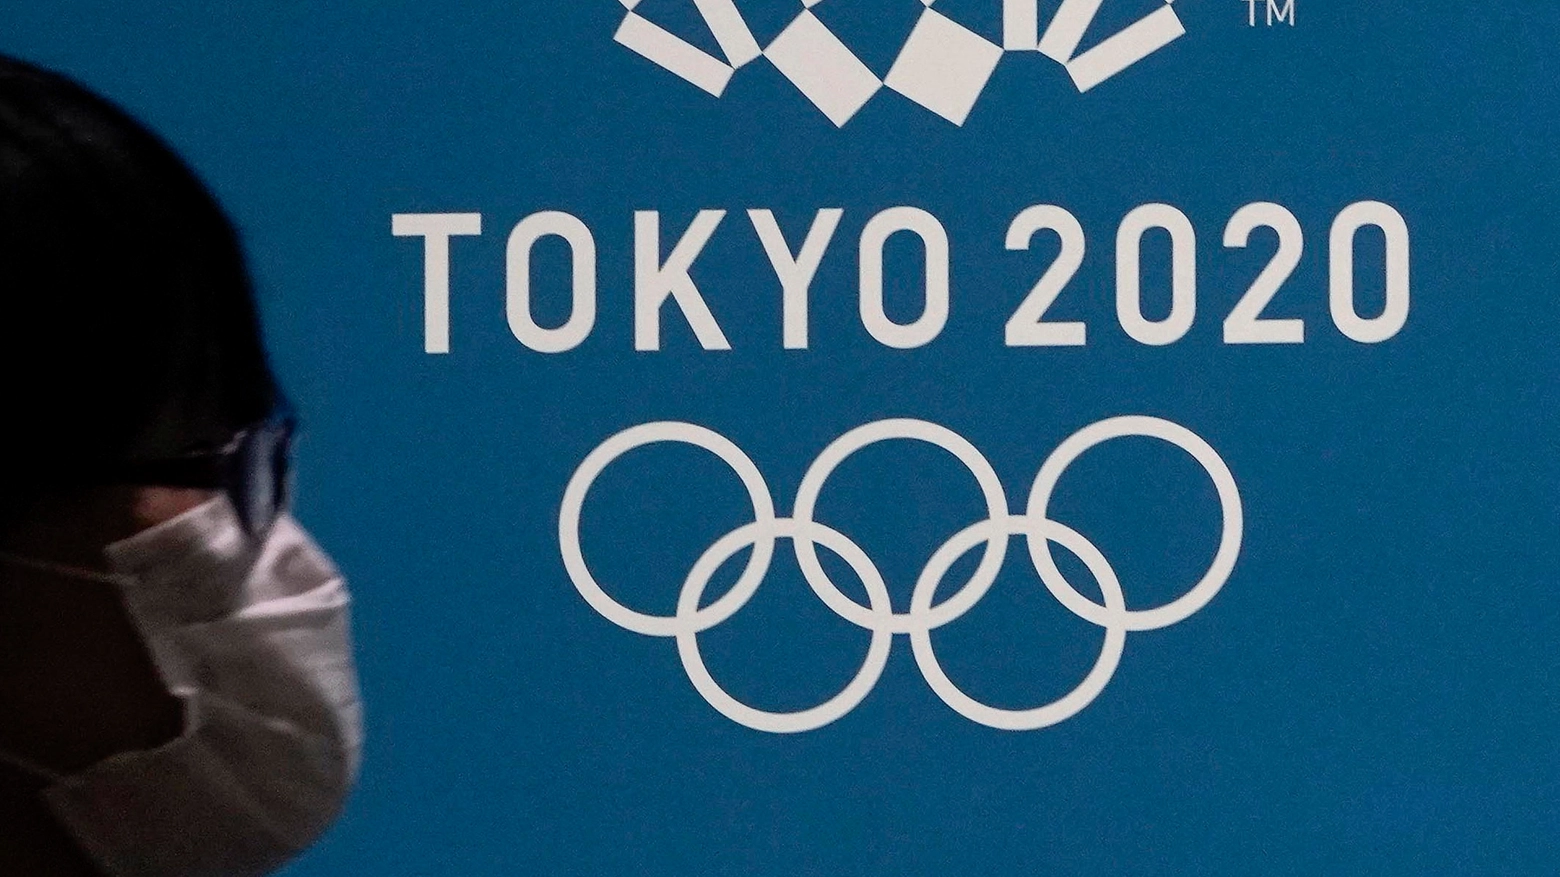 Le Olimpiadi di Tokyo 2020 sono in programma dal 23 luglio all'8 agosto 2021